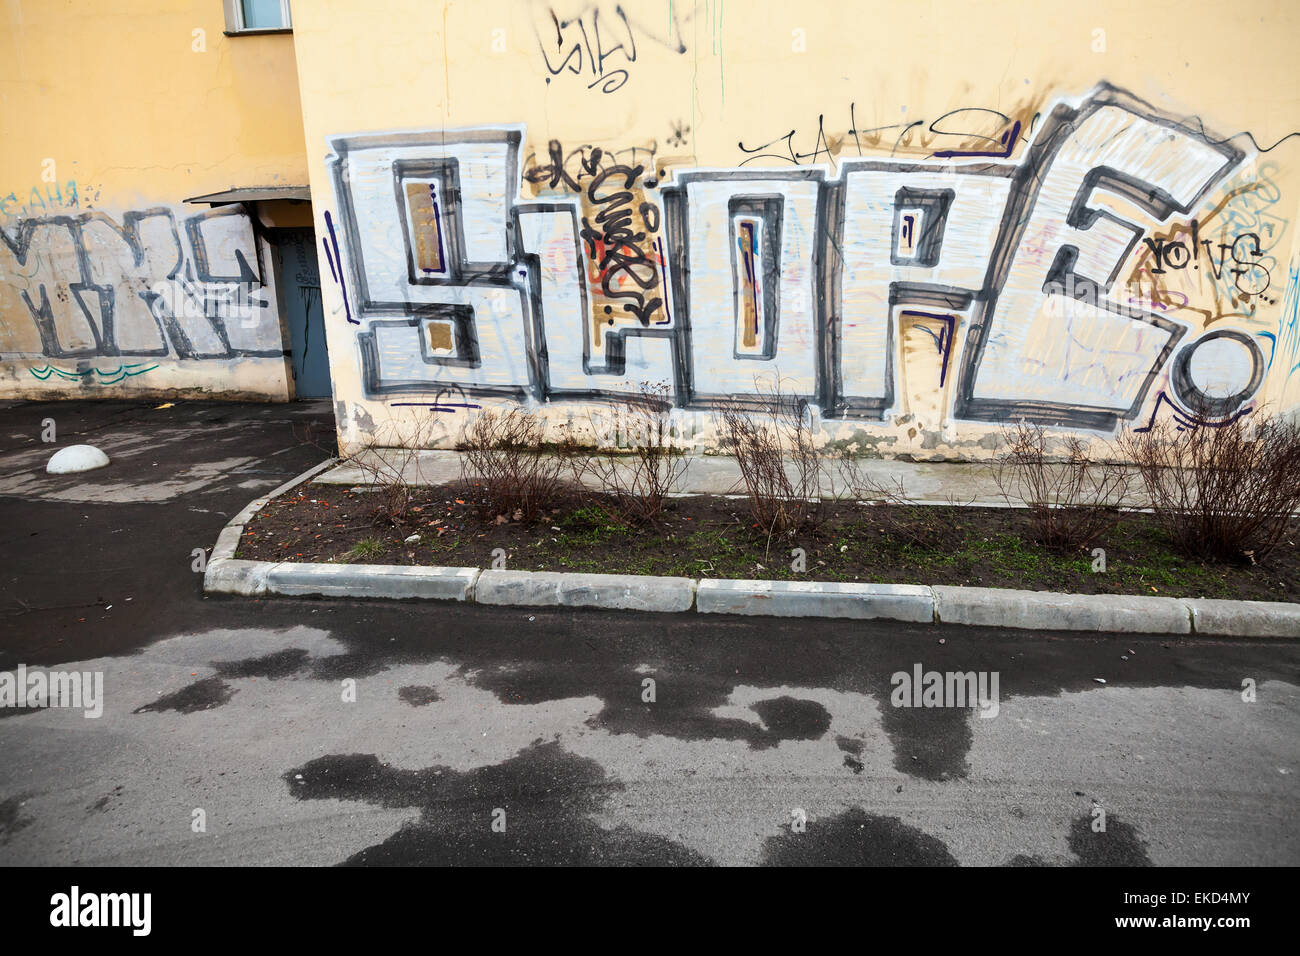 San Pietroburgo, Russia - Aprile 3, 2015: frammento di Graffiti con pendenza del testo sulla parete gialla. Isola Vasilievsky Foto Stock